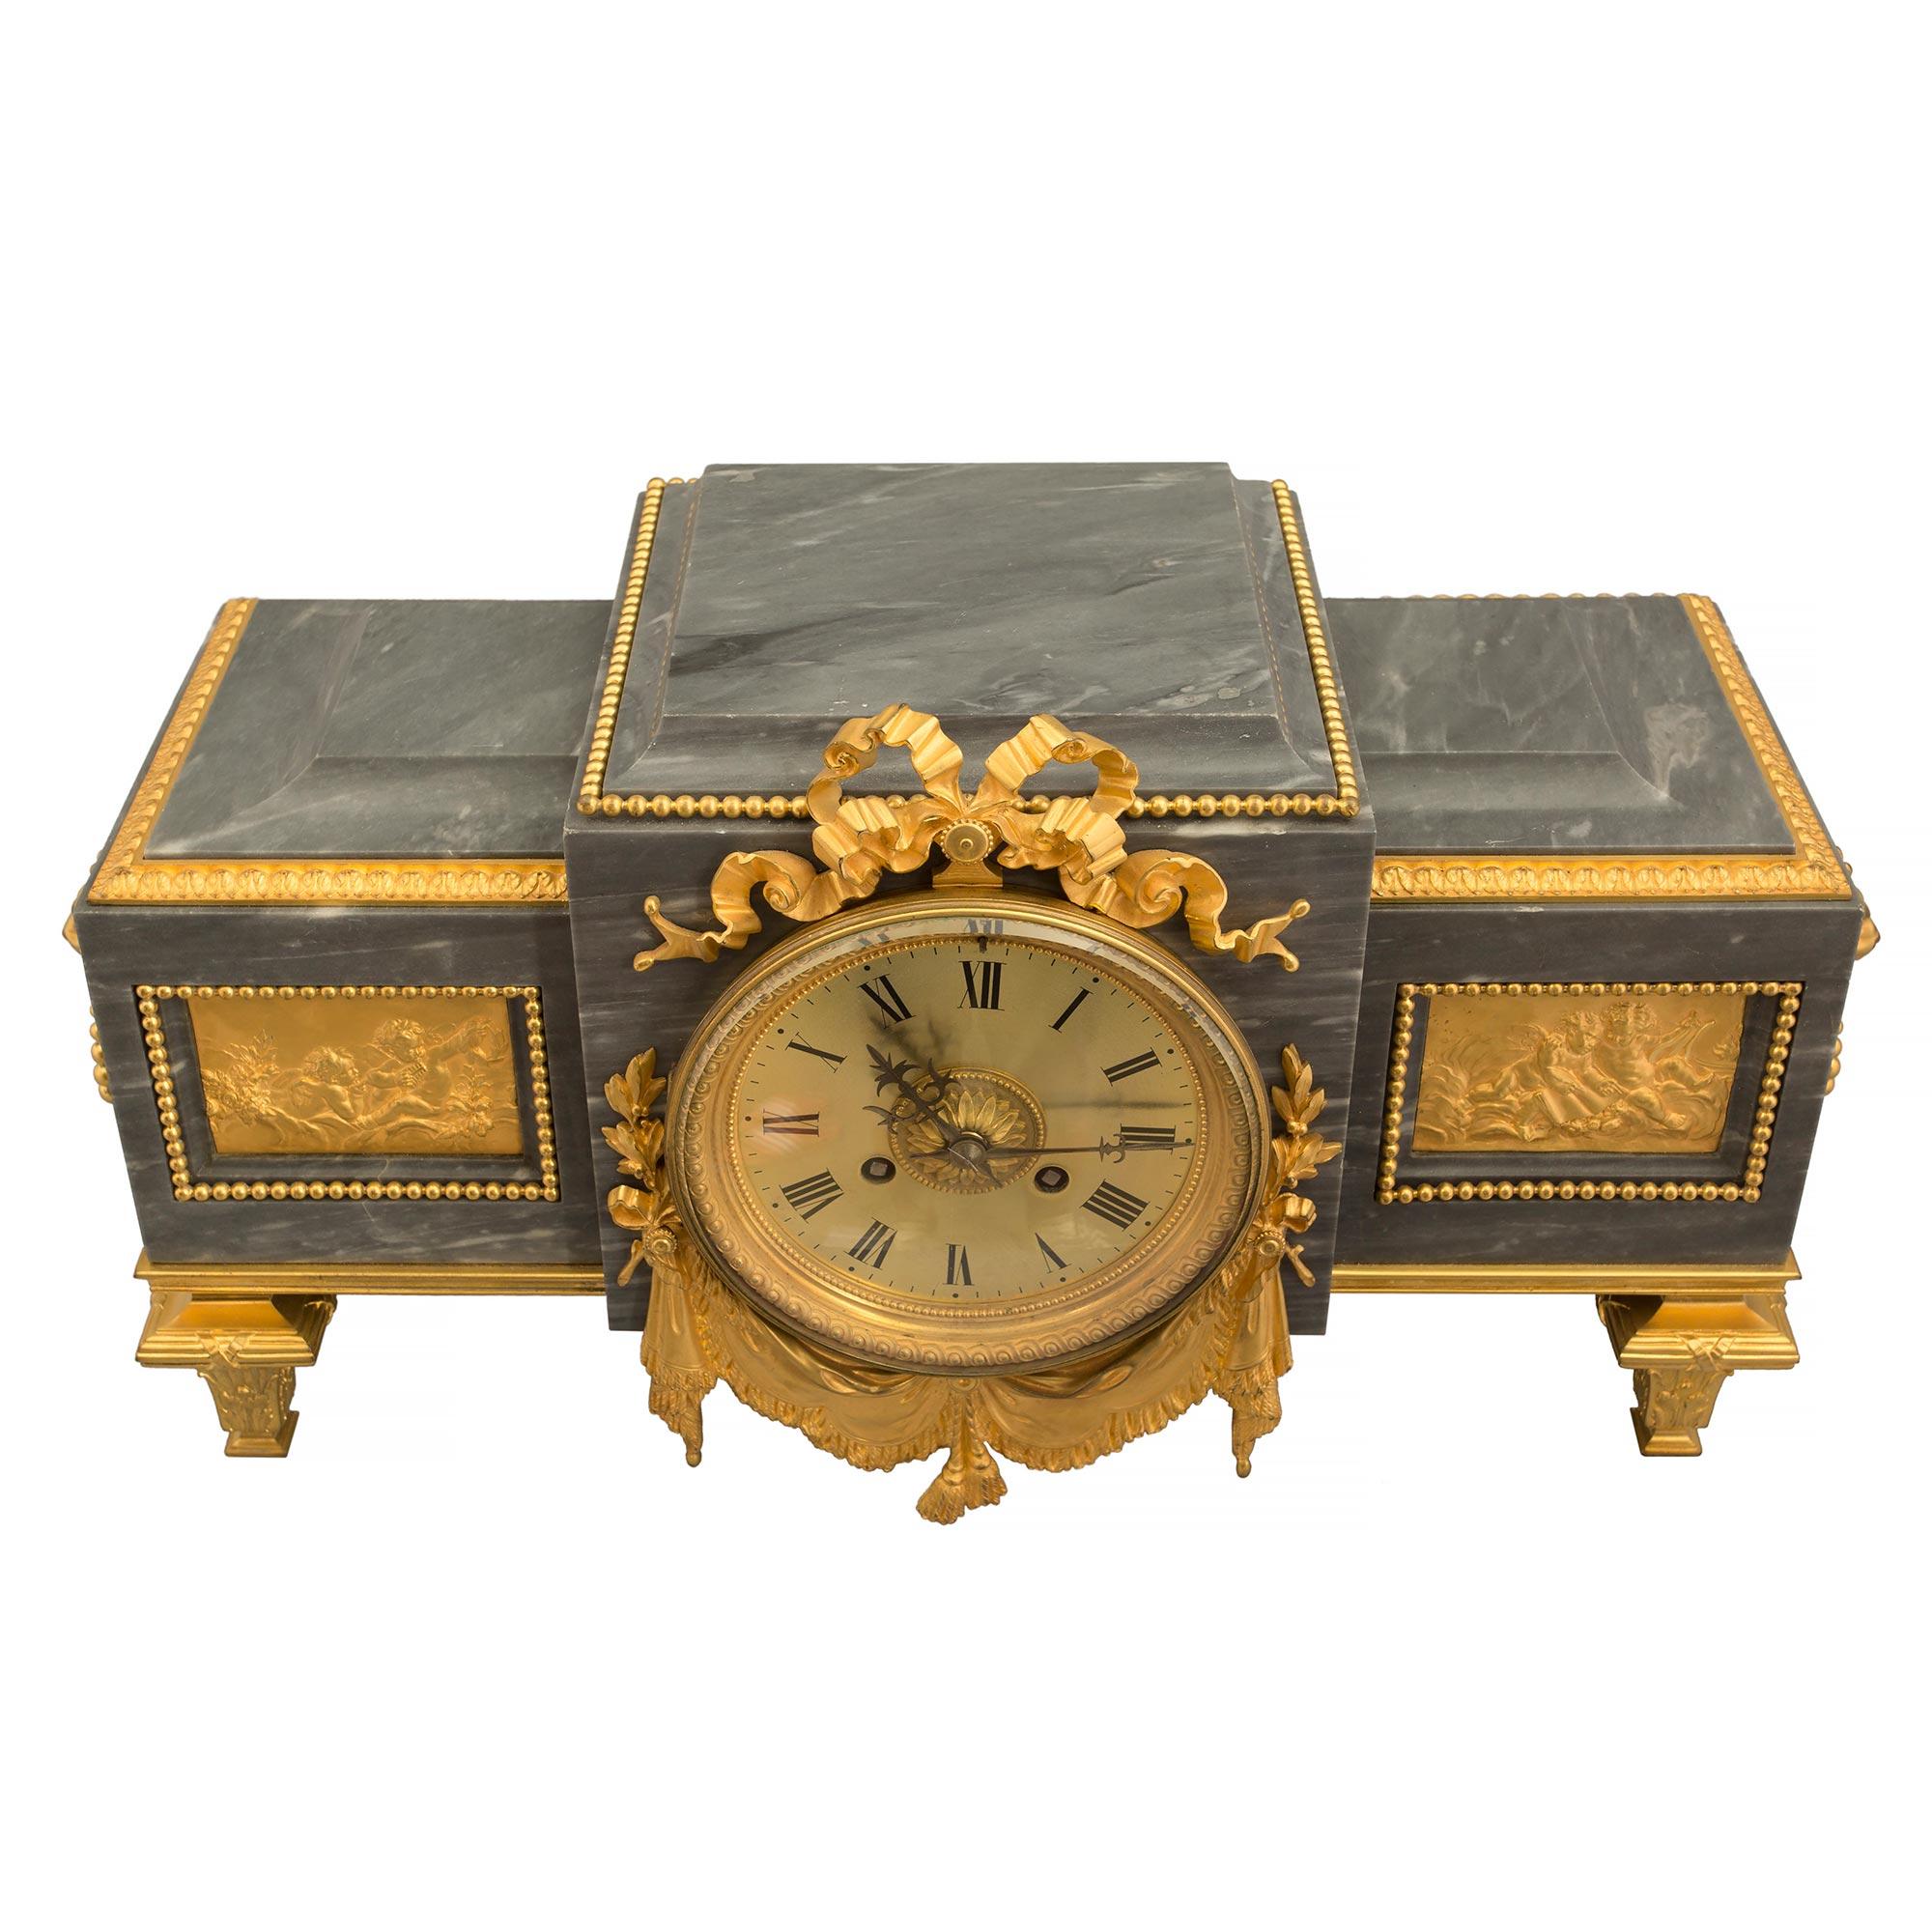 Elégante pendule à piédestal en marbre et bronze doré de style Louis XVI du XIXe siècle. L'horloge à piédestal de forme rectangulaire est surélevée par des pieds en forme de topie en bronze doré, sous un bandeau tacheté. Le centre en saillie